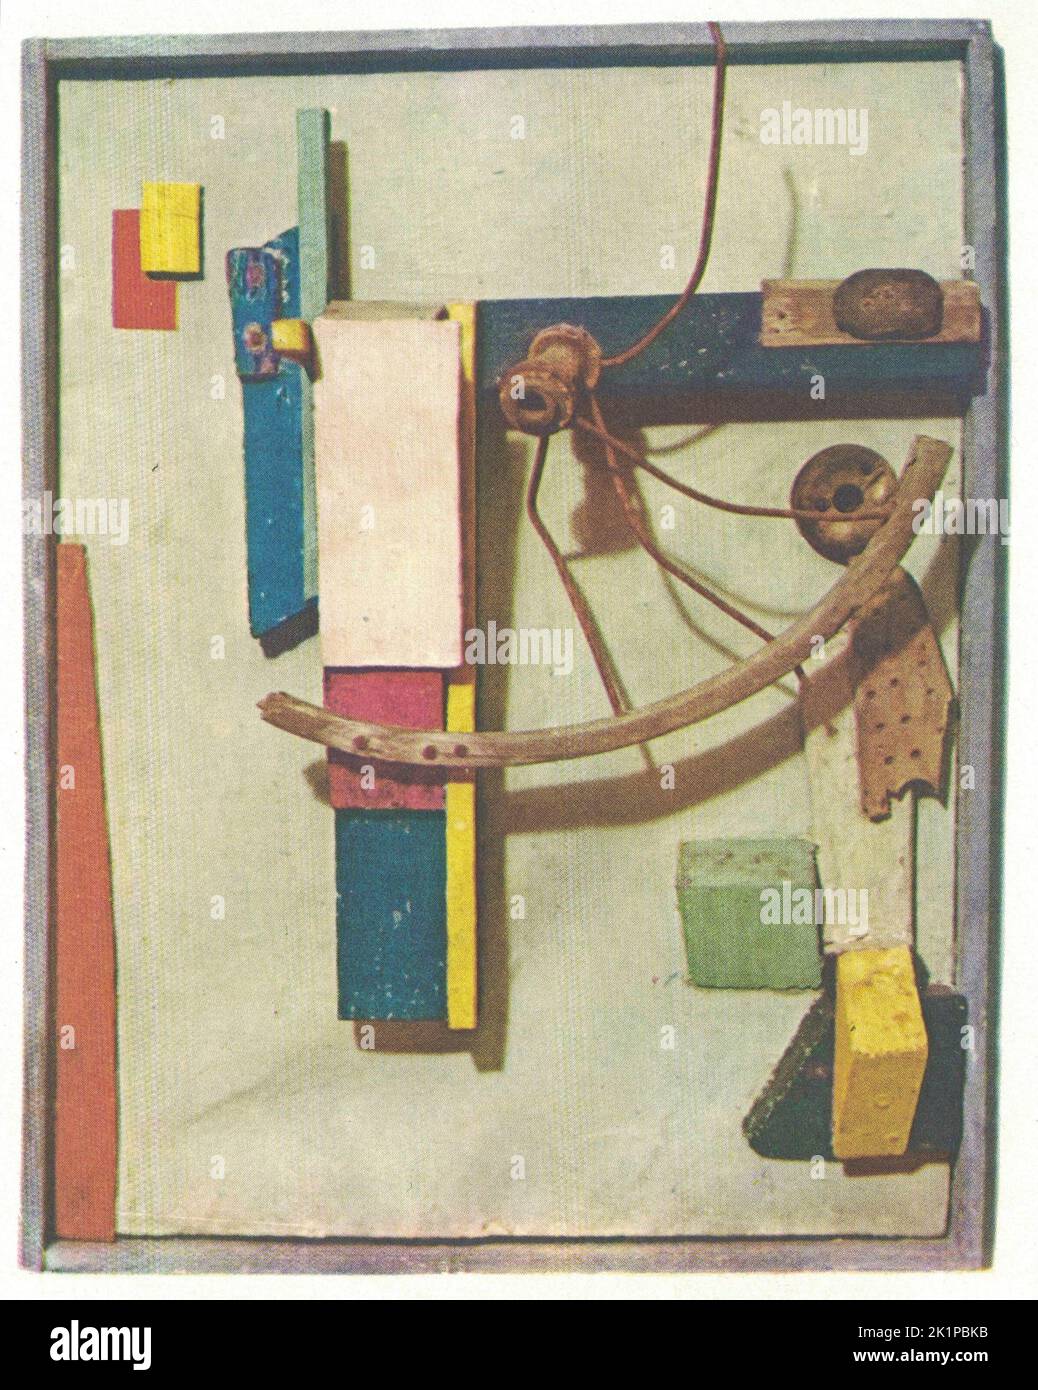 Kleines Seelenhaus, 1926, Assemblage. Das Werk von Kurt Schwitters. Kurt Hermann Eduard Karl Julius Schwitters (20. Juni 1887 – 8. Januar 1948) war ein deutscher Künstler, der in Hannover geboren wurde. Schwitters arbeitete in verschiedenen Genres und Medien, darunter dadaismus, Konstruktivismus, Surrealismus, Poesie, Ton, Malerei, Skulptur, Grafikdesign, Typografie, Und was als Installationskunst bekannt wurde. Er ist vor allem für seine Collagen bekannt, die Merz Picturs heißen. Stockfoto